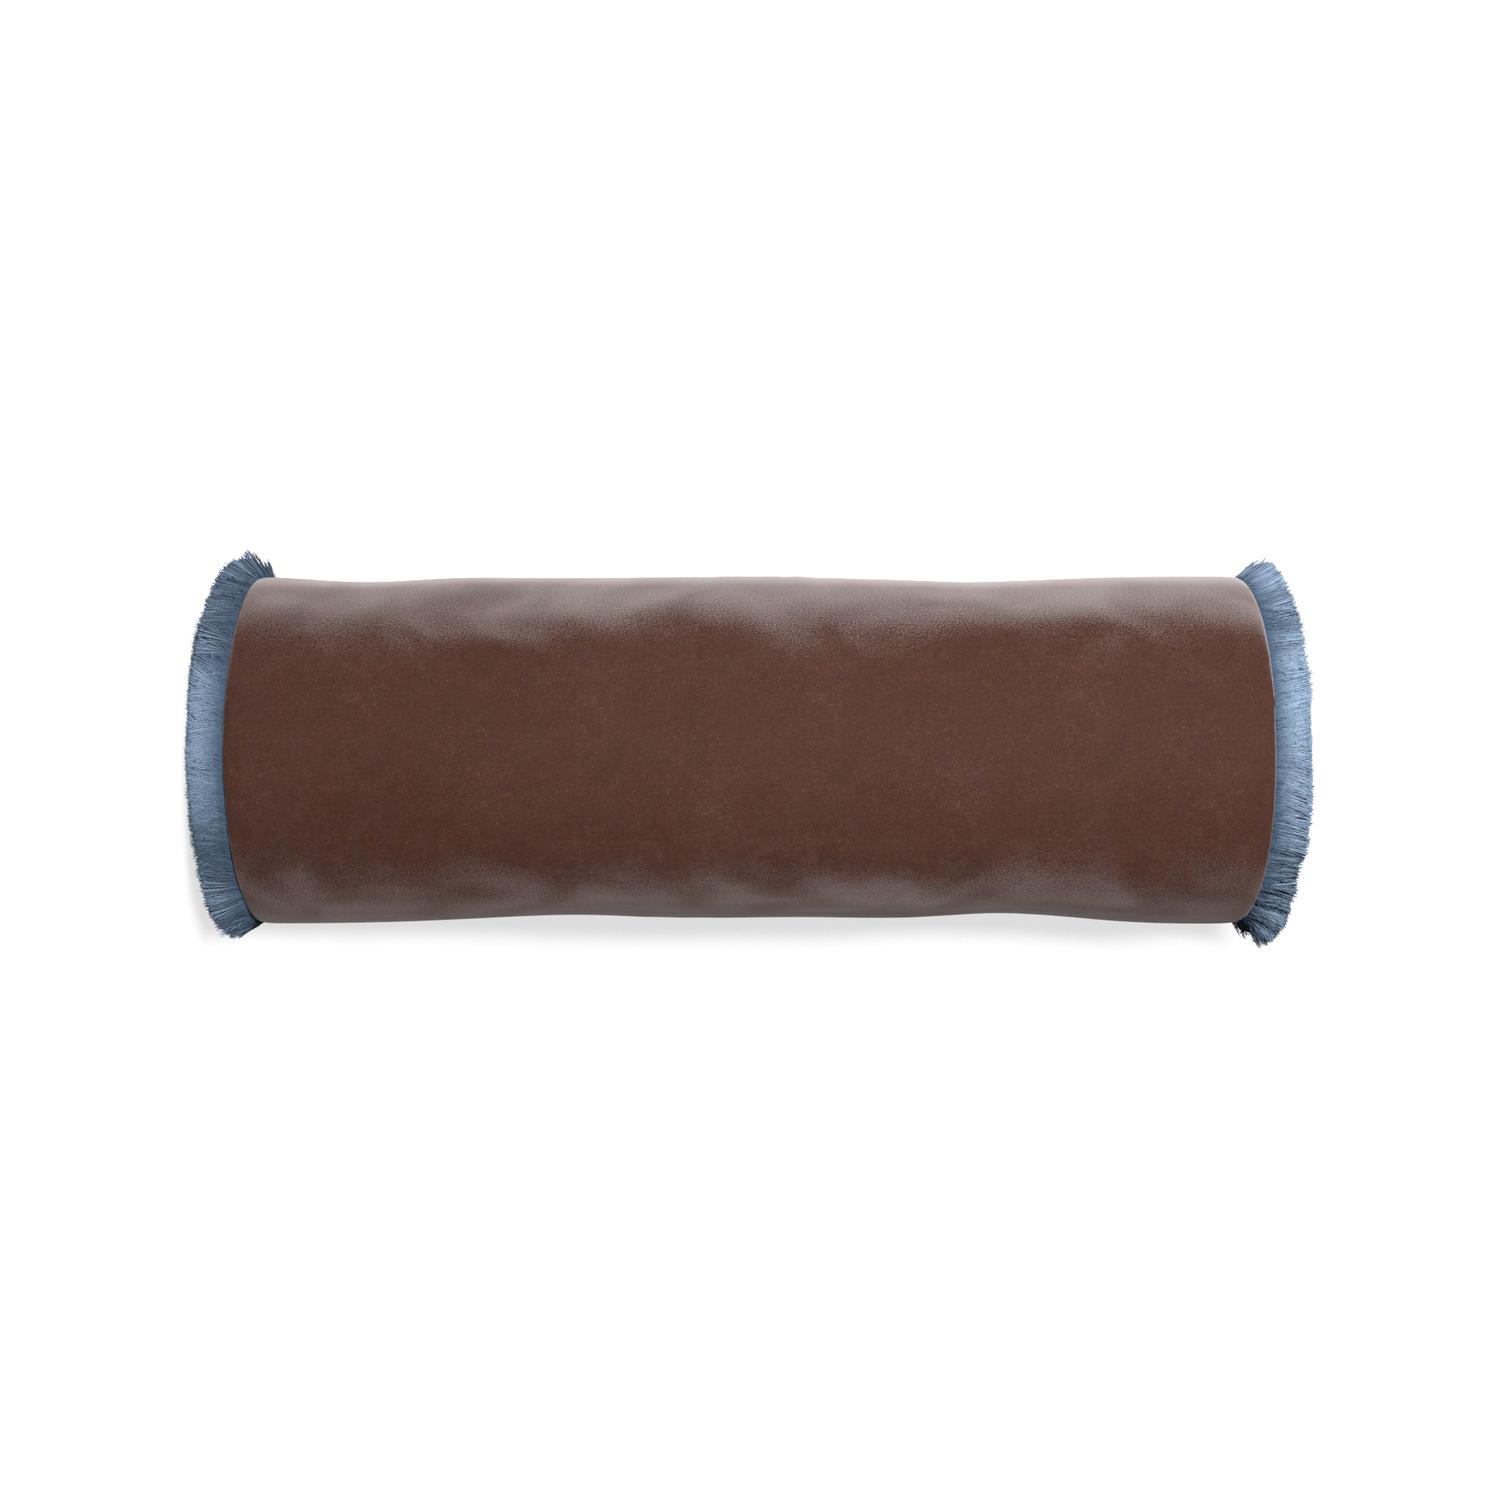 bolster brown velvet pillow with sky blue fringe